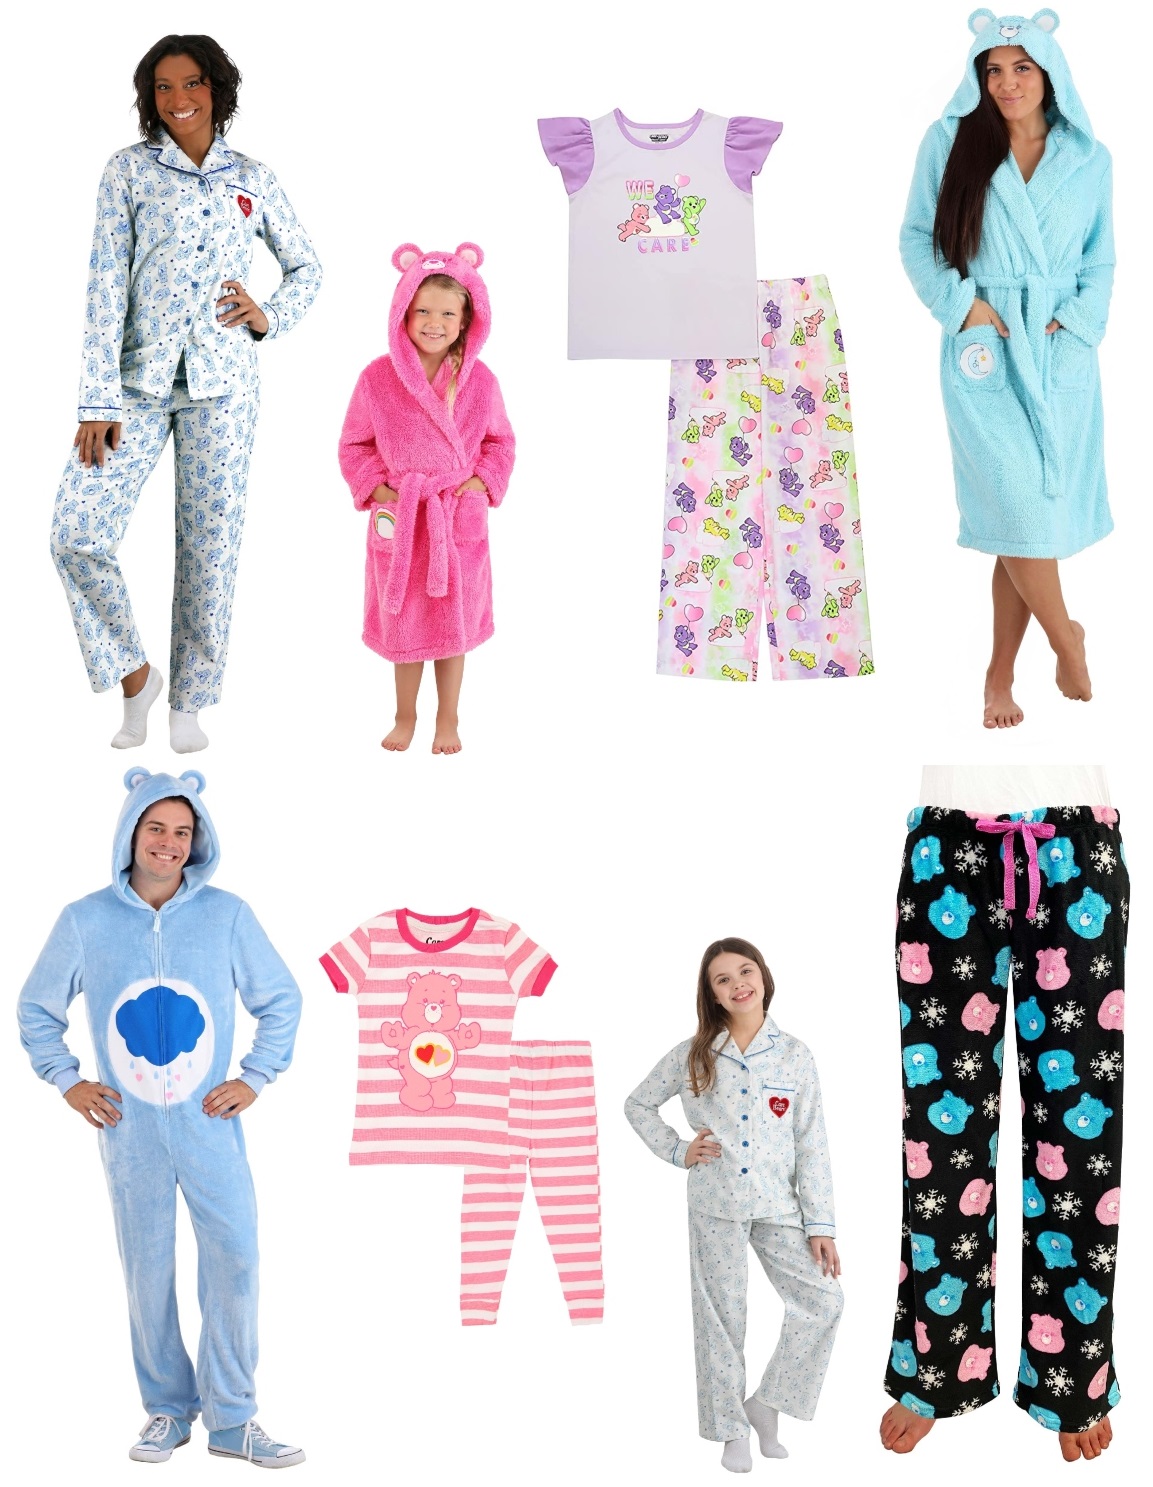 Care Bear Pajamas and Loungewear